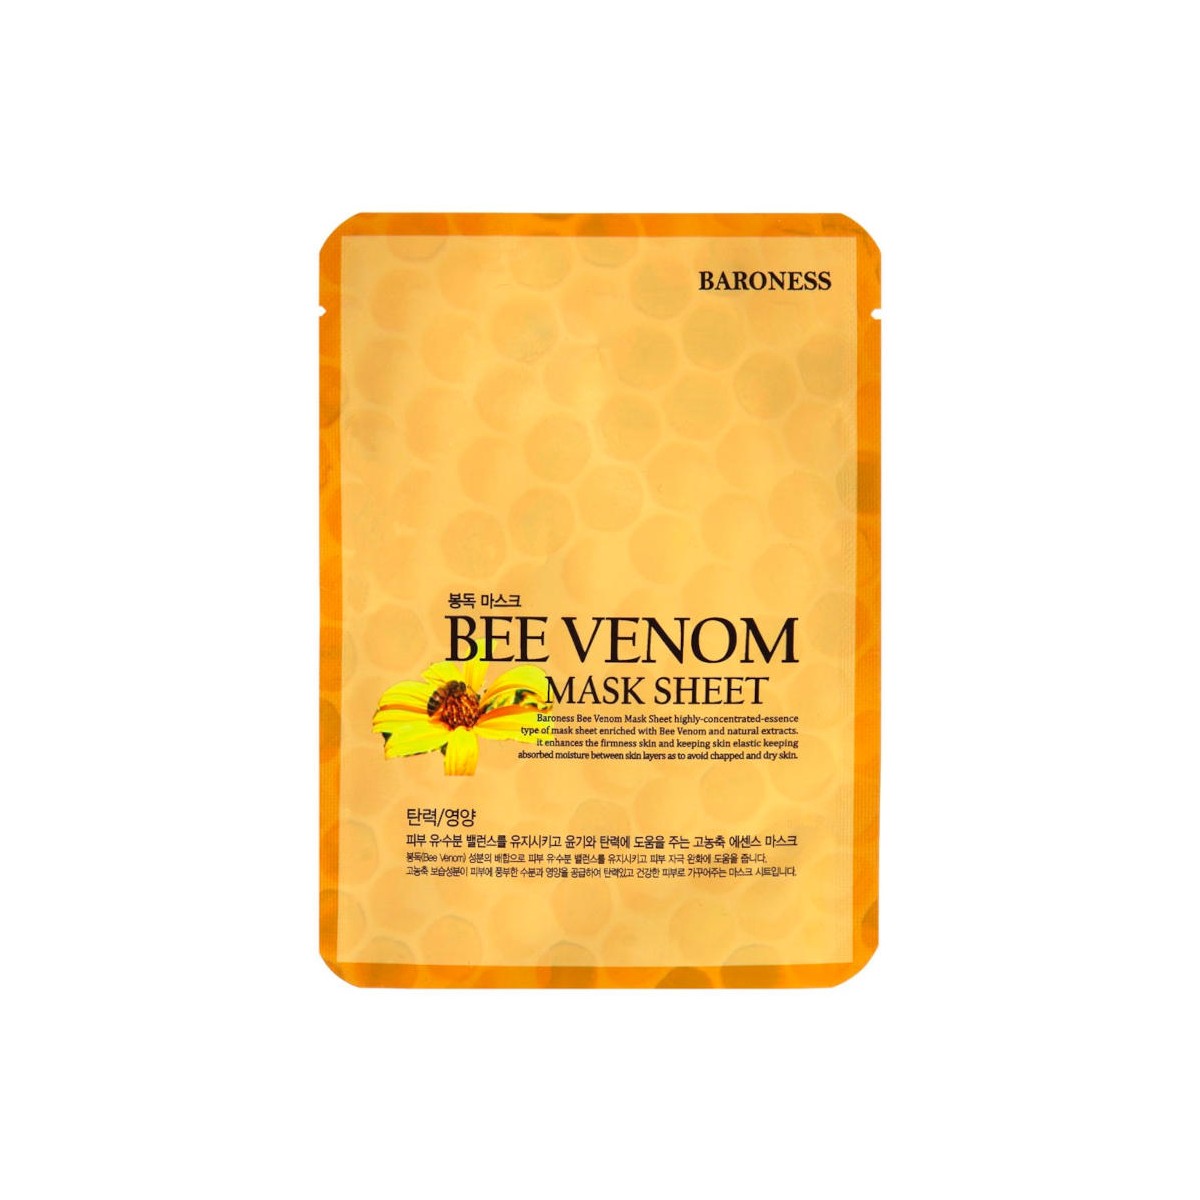 Mascarillas Coreanas de Hoja al mejor precio: Baroness Bee Venom Mask Sheet de Baroness en Skin Thinks - Piel Seca